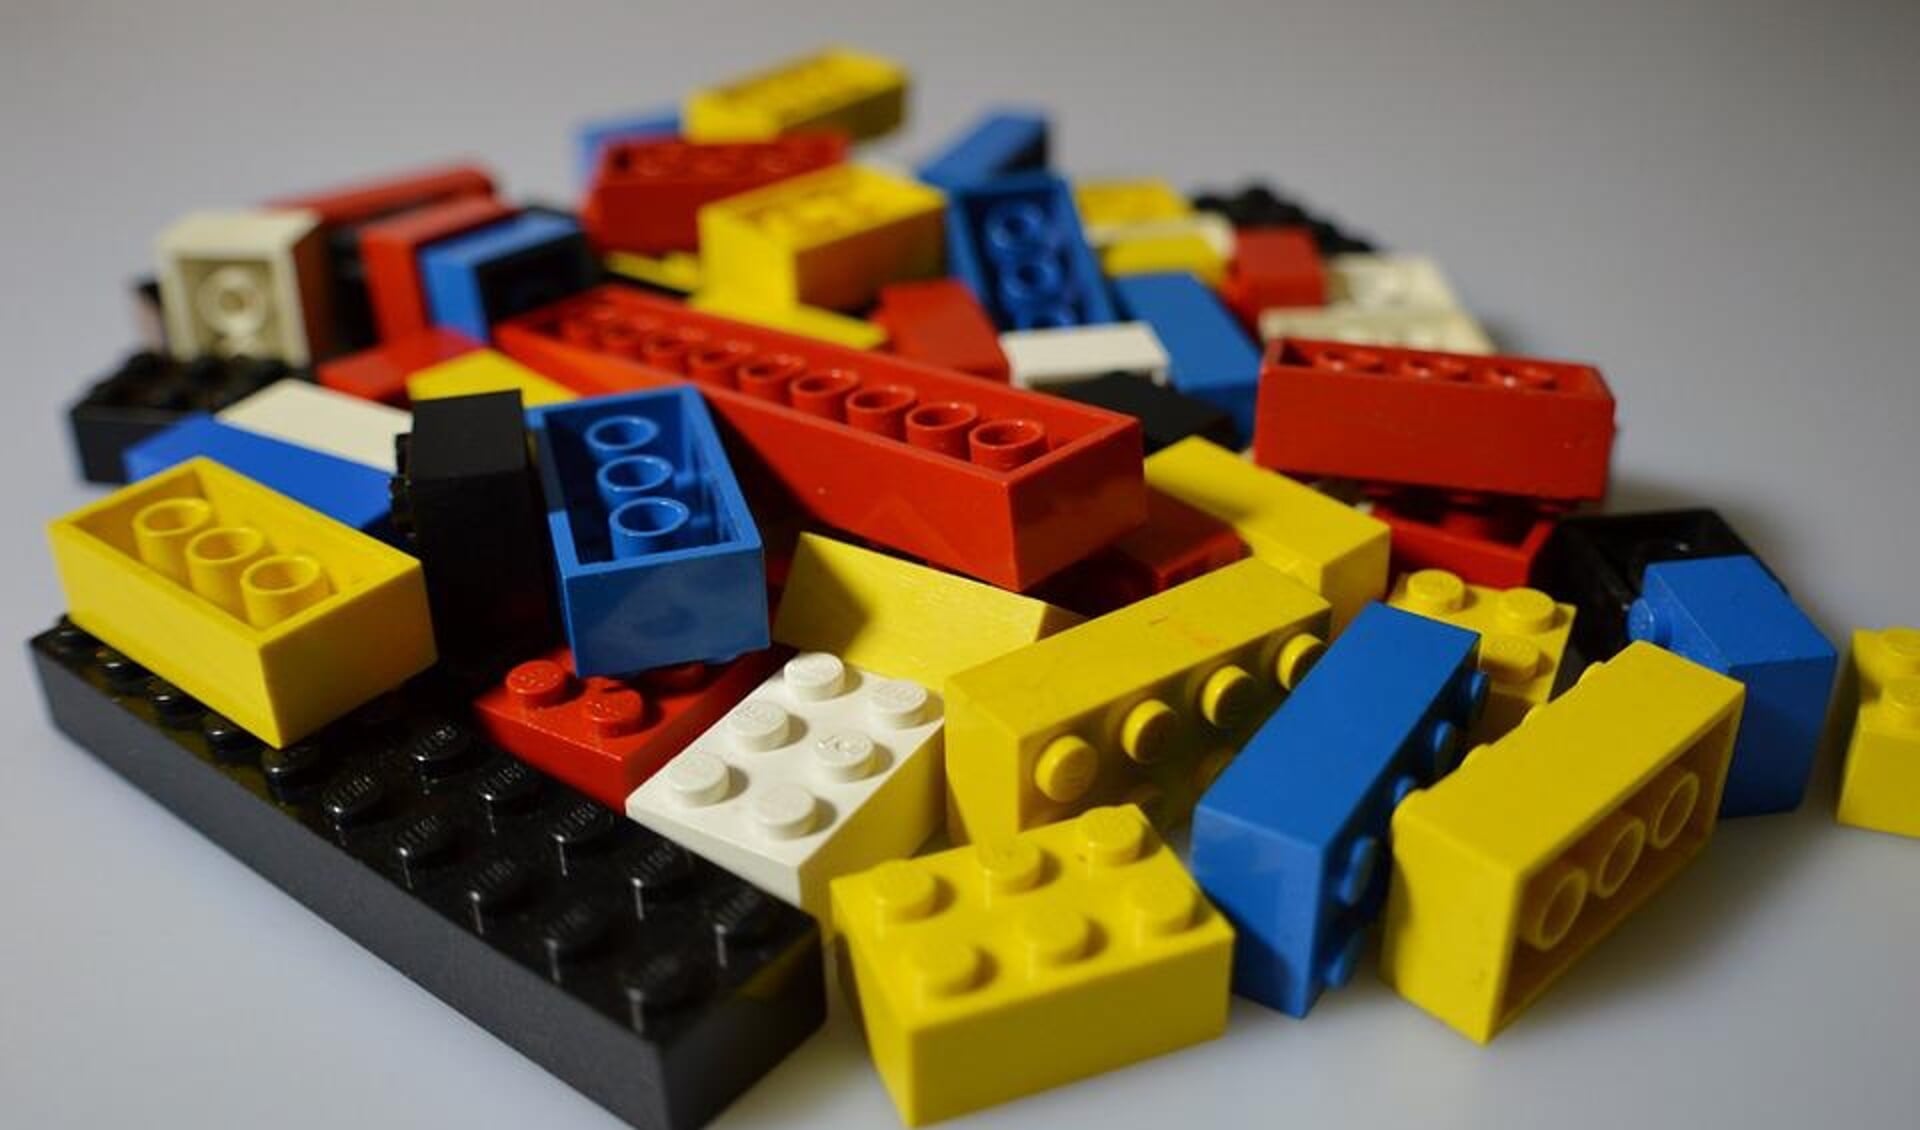 Er bestaat geen twijfel over dat Lego een van de populairste speelgoedsets ter wereld is.